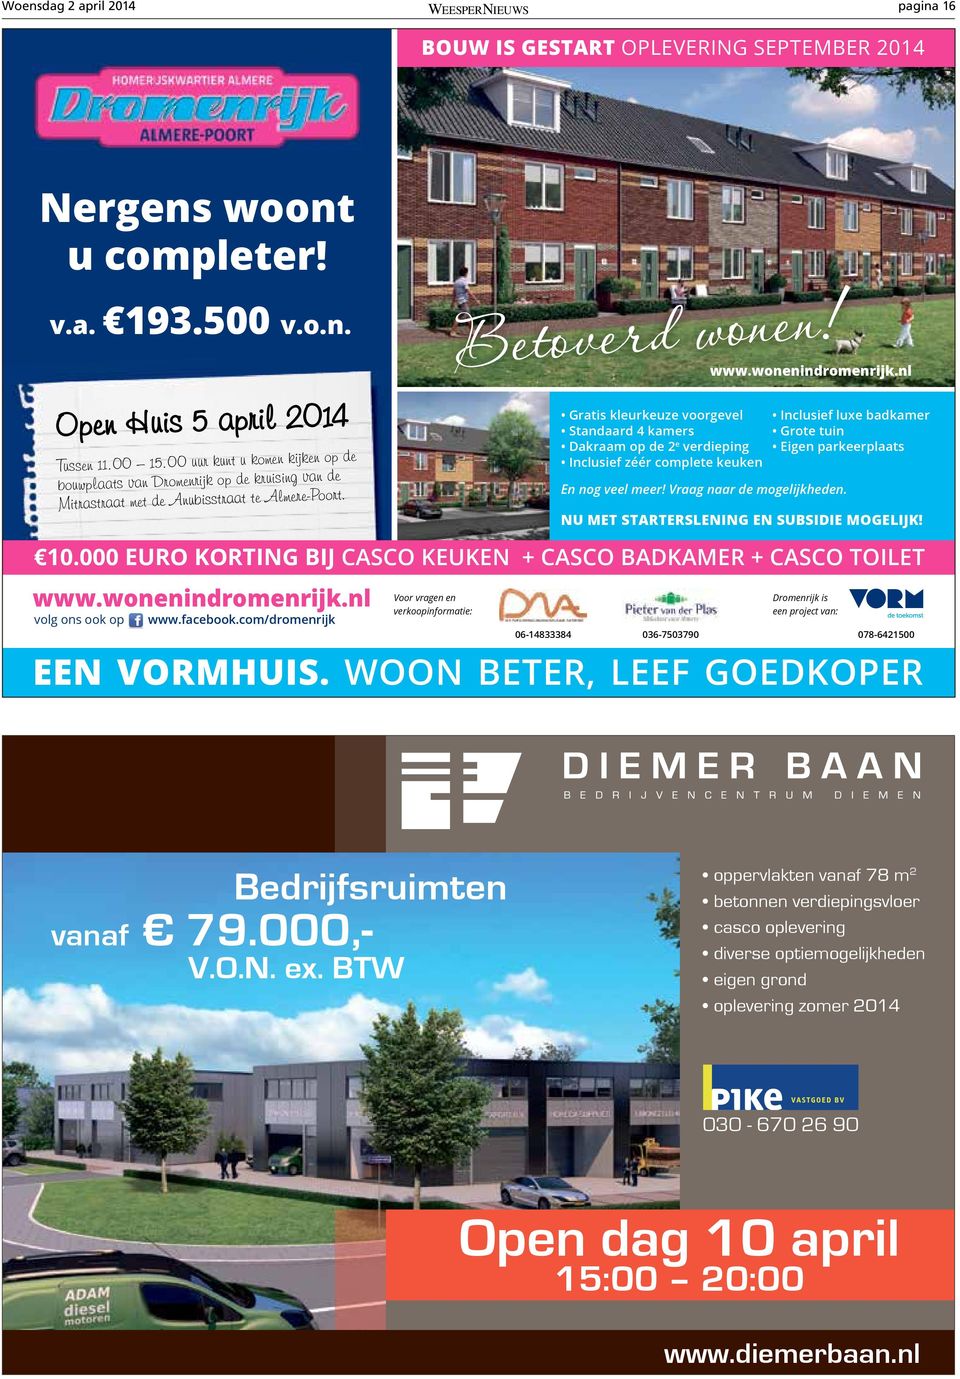 Gratis kleurkeuze voorgevel Standaard 4 kamers Dakraam op de 2 e verdieping Inclusief zéér complete keuken www.wonenindromenrijk.nl En nog veel meer! Vraag naar de mogelijkheden.